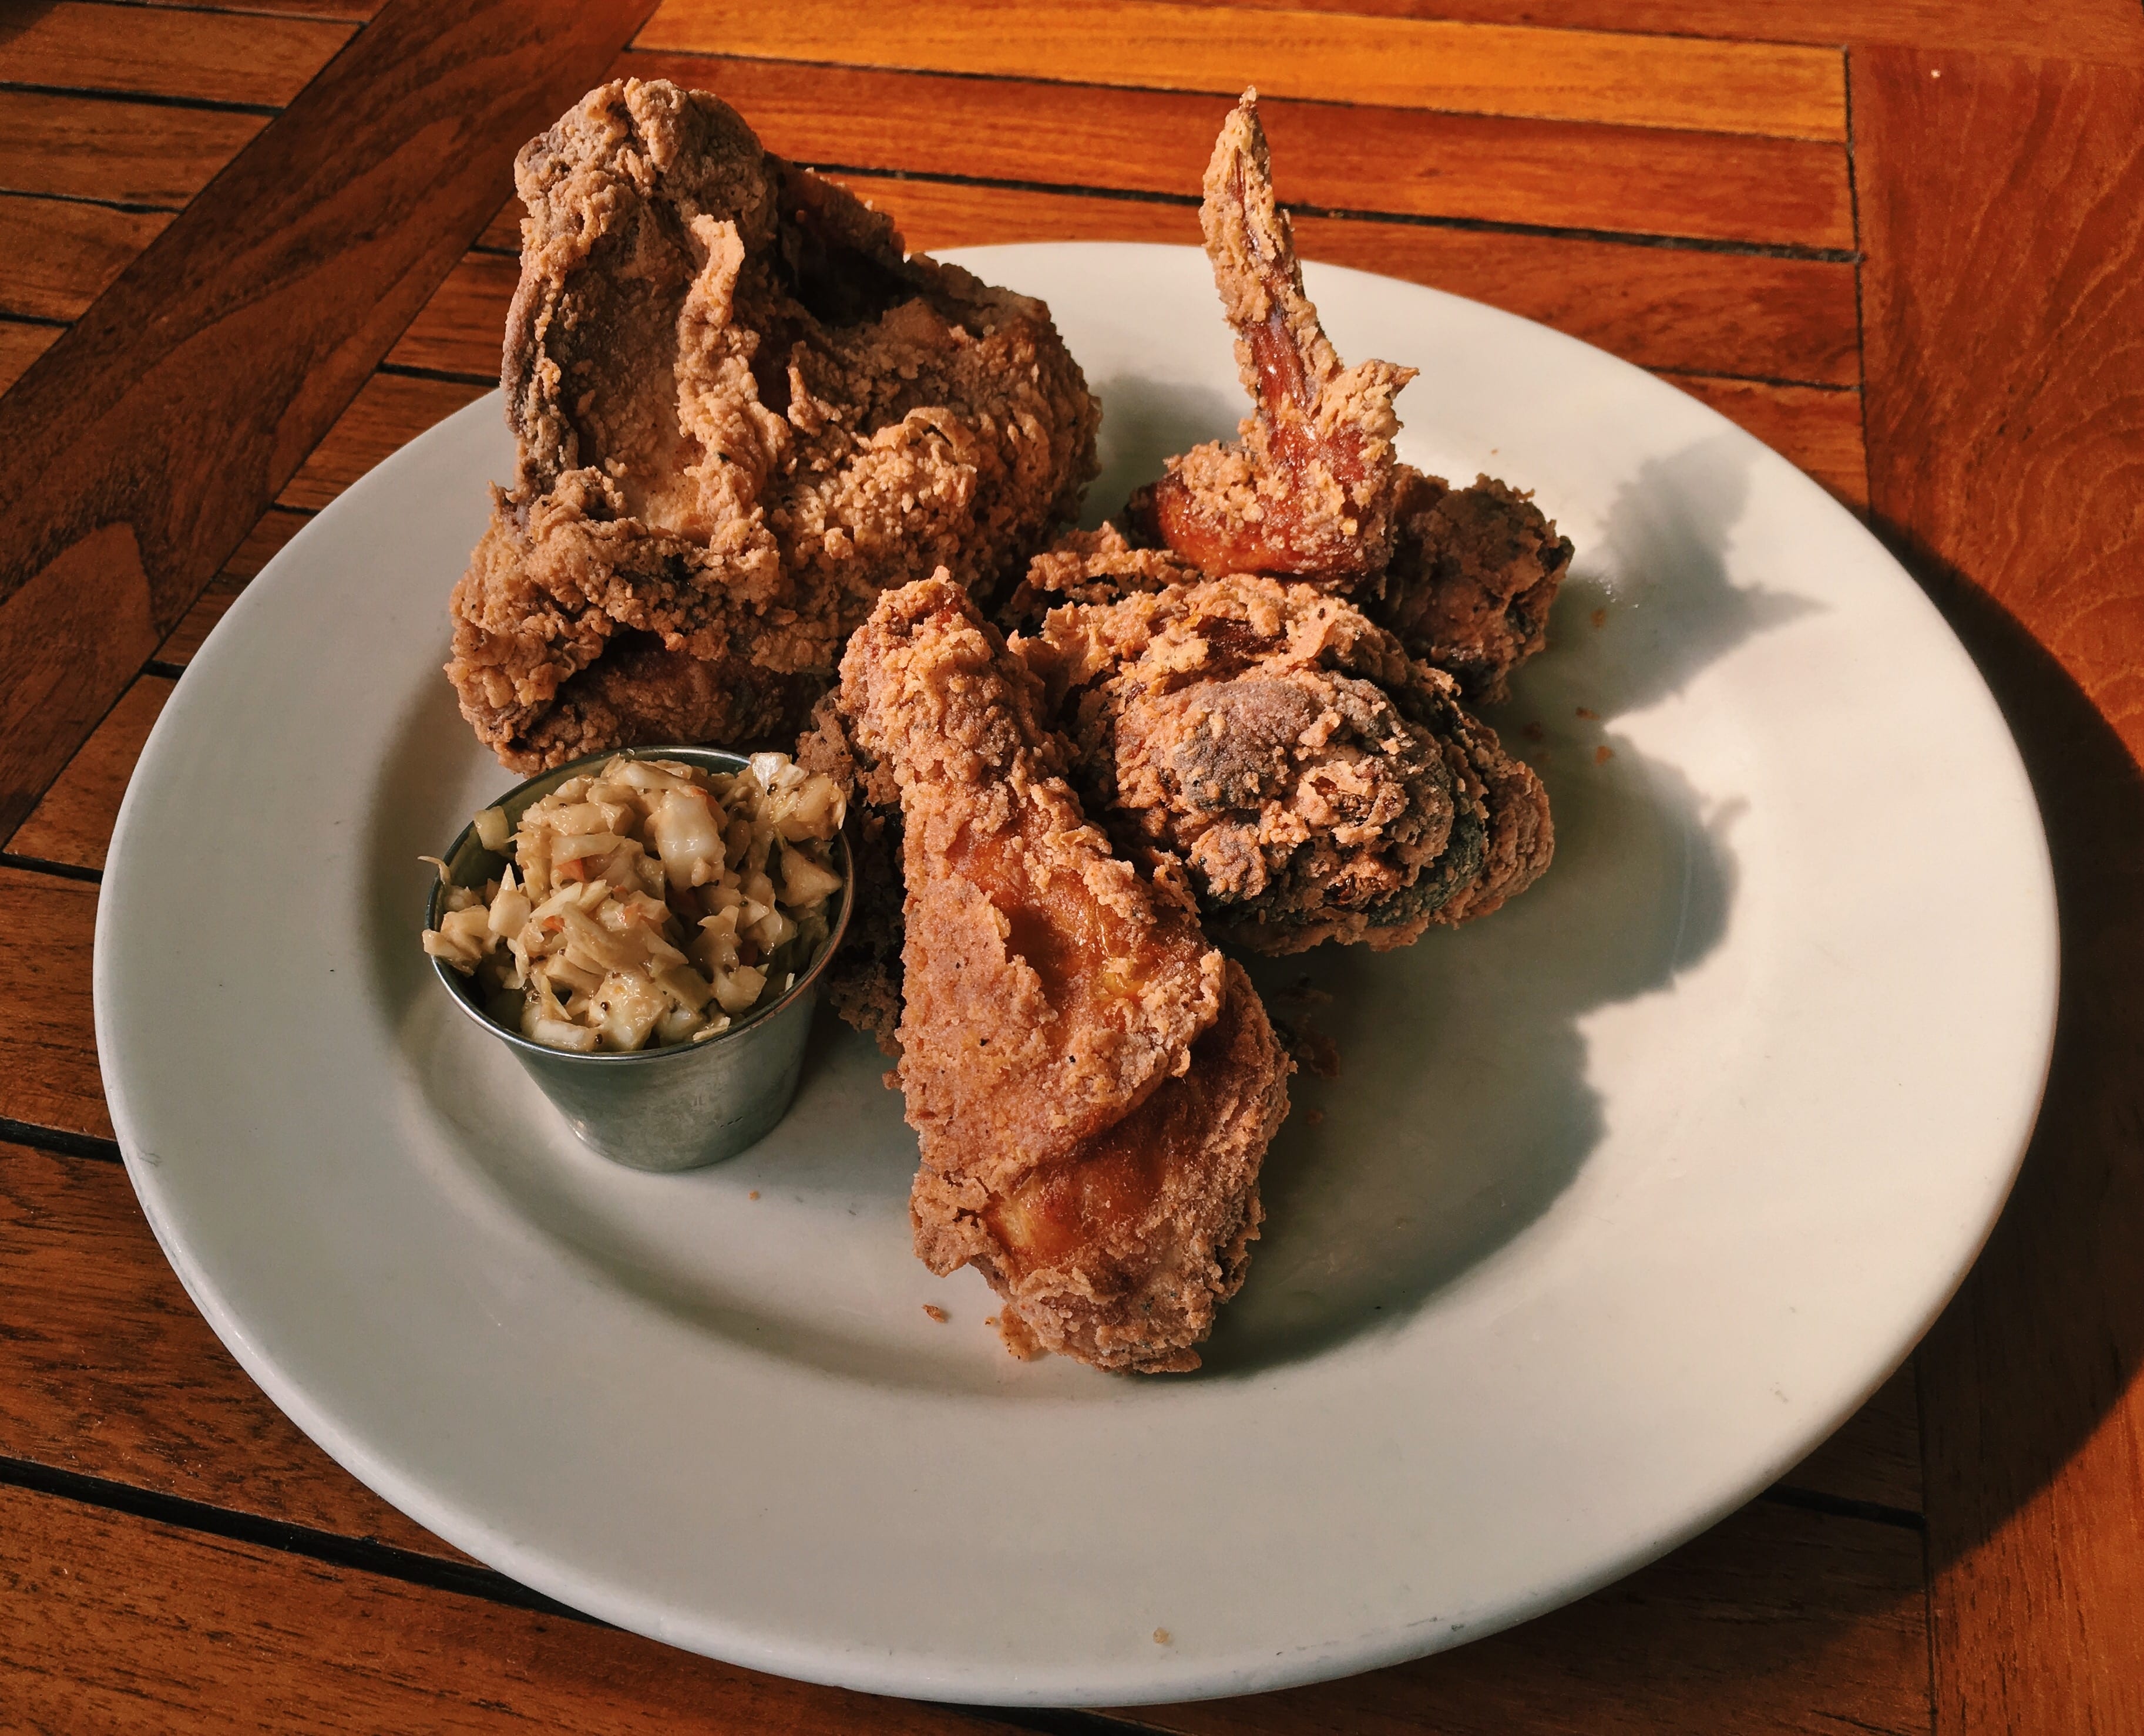 Zingerman's Roadhouse makes gluten-free fried chicken in a dedicated fryer